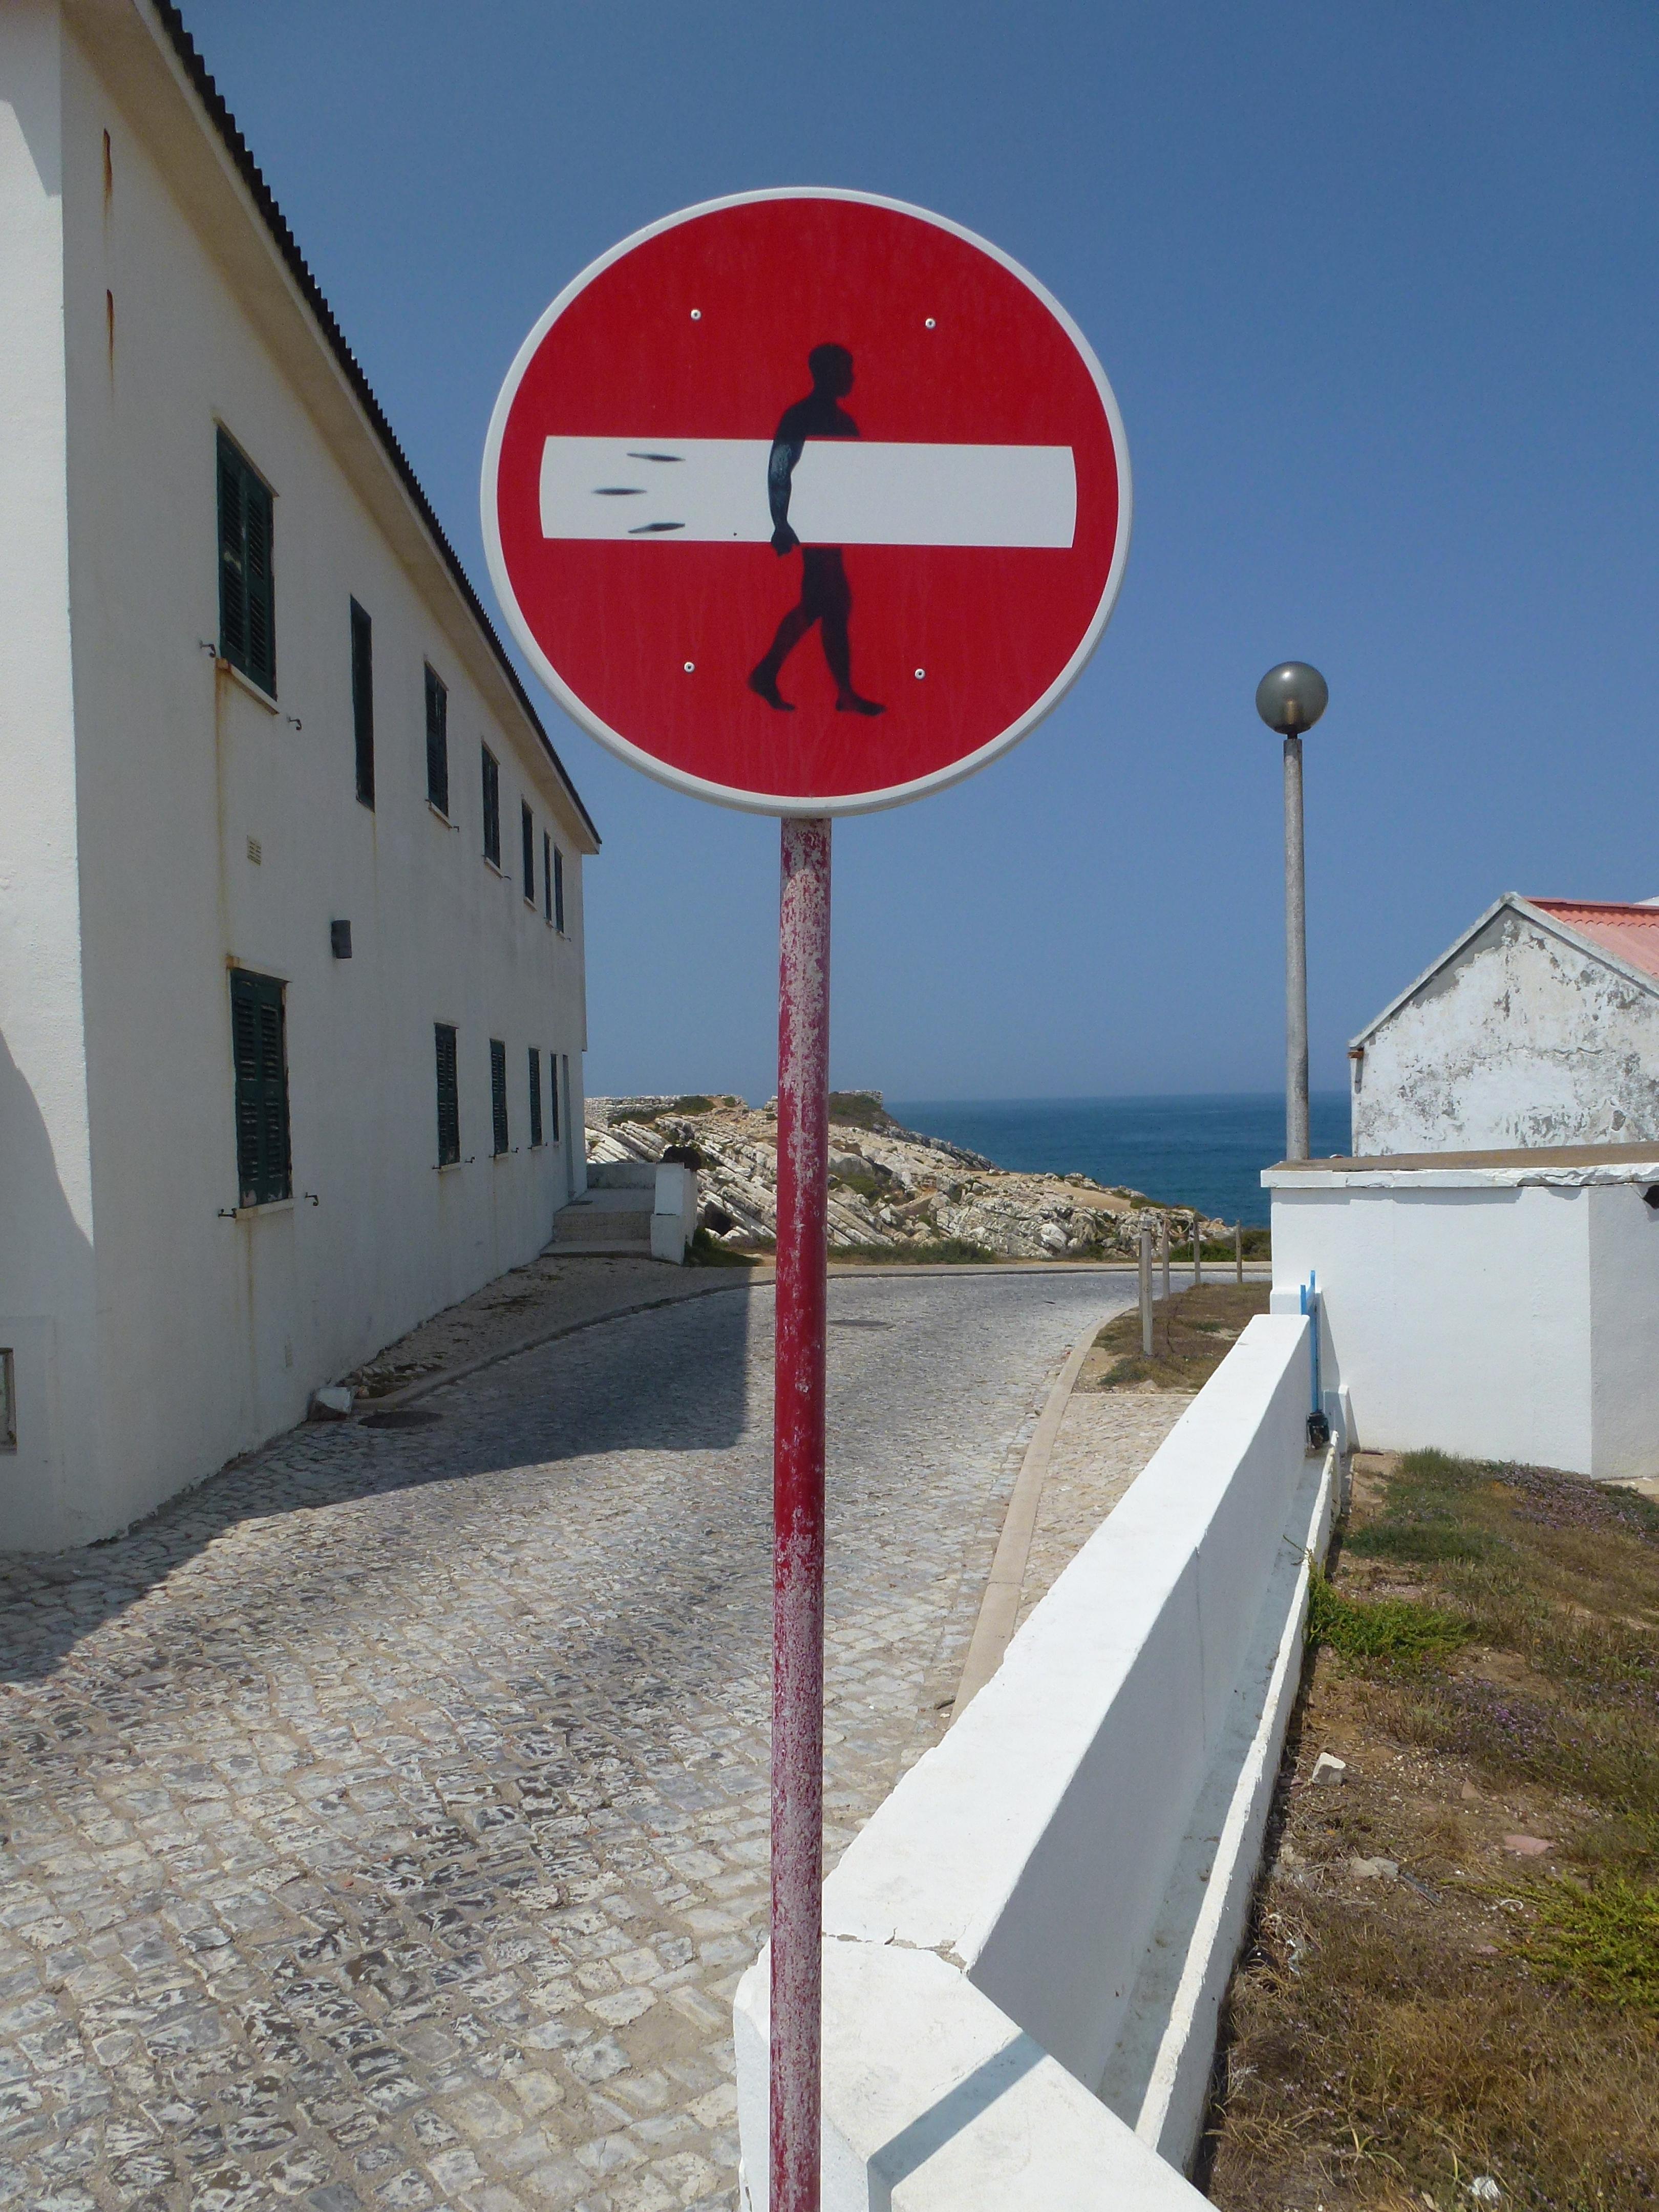 Einfahrt verboten auf portugiesisch.
#baleal #portugal #surf #travel #weltreise